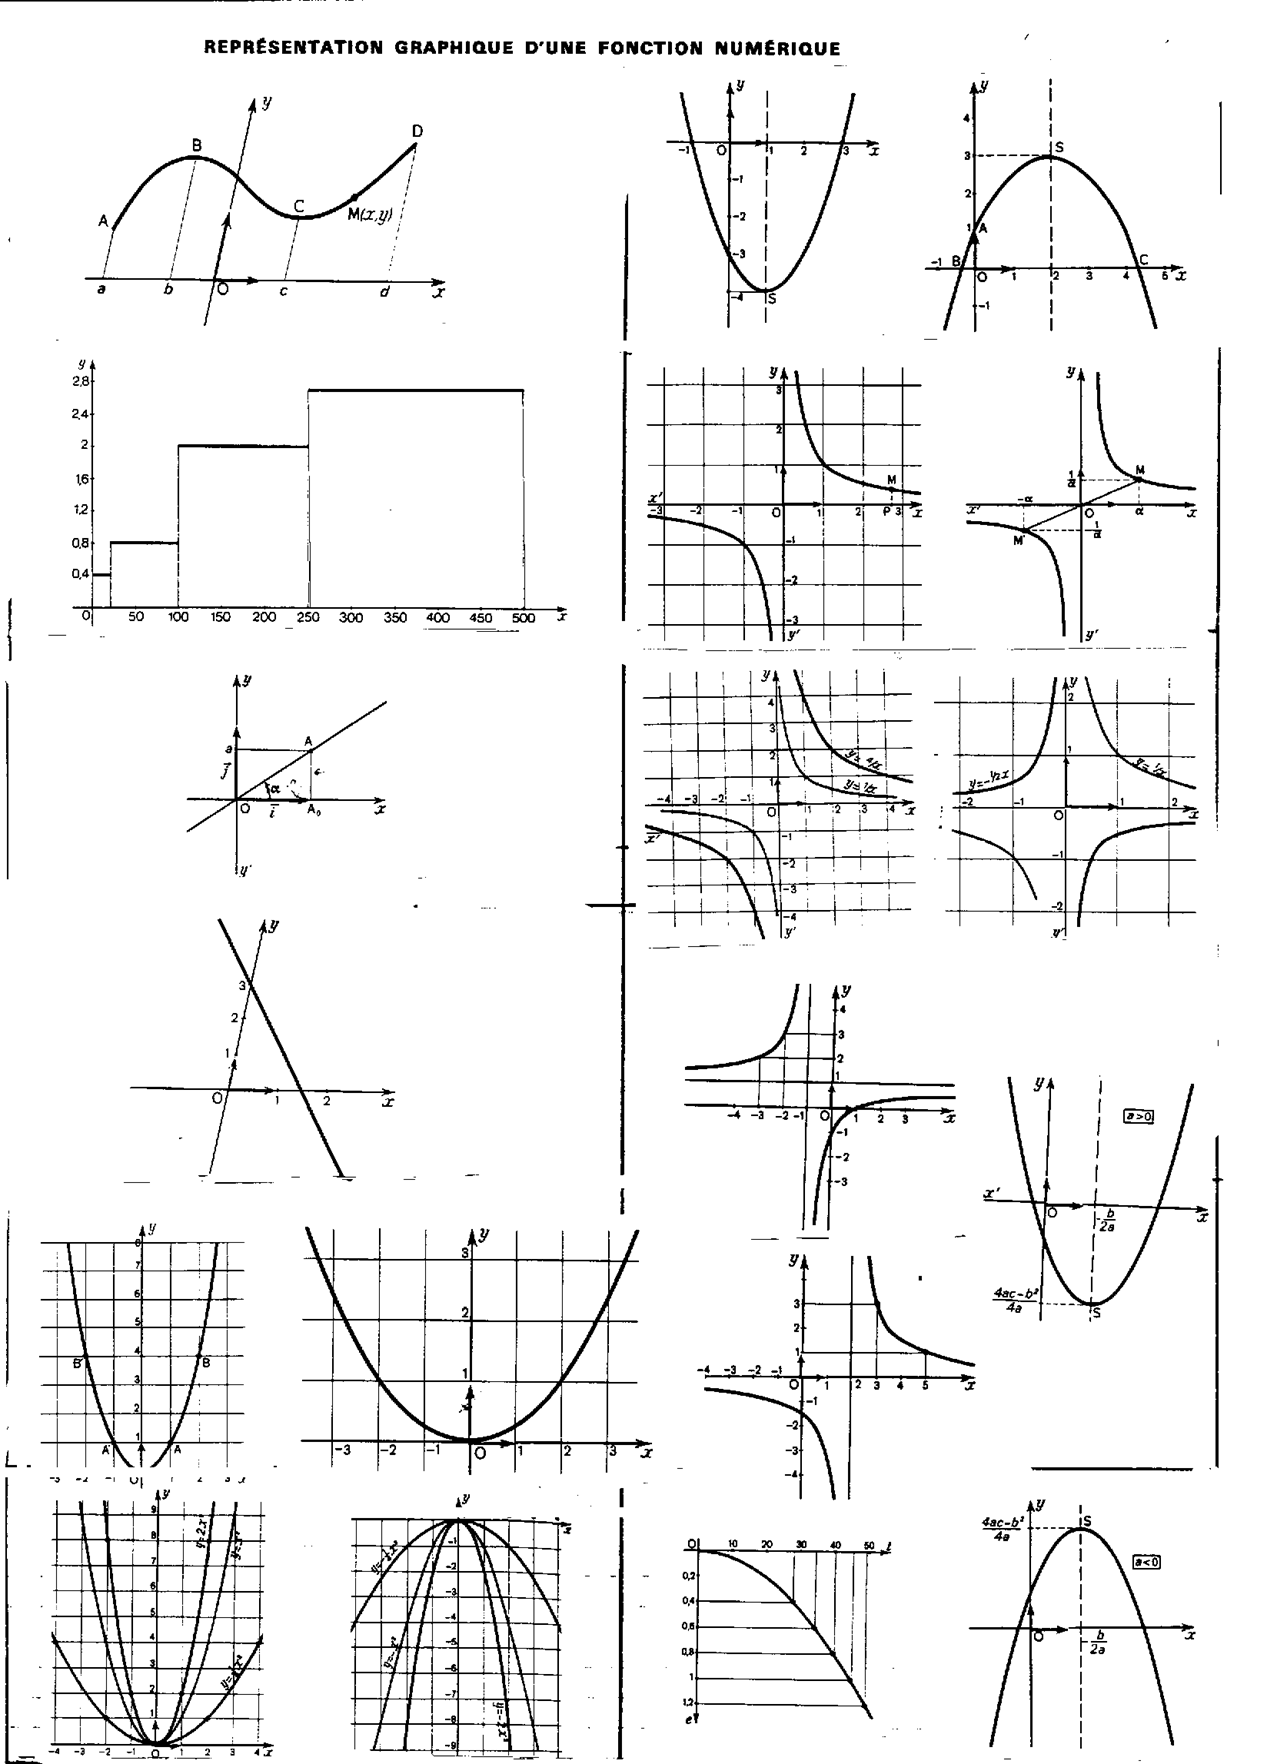 fonct représ graph2